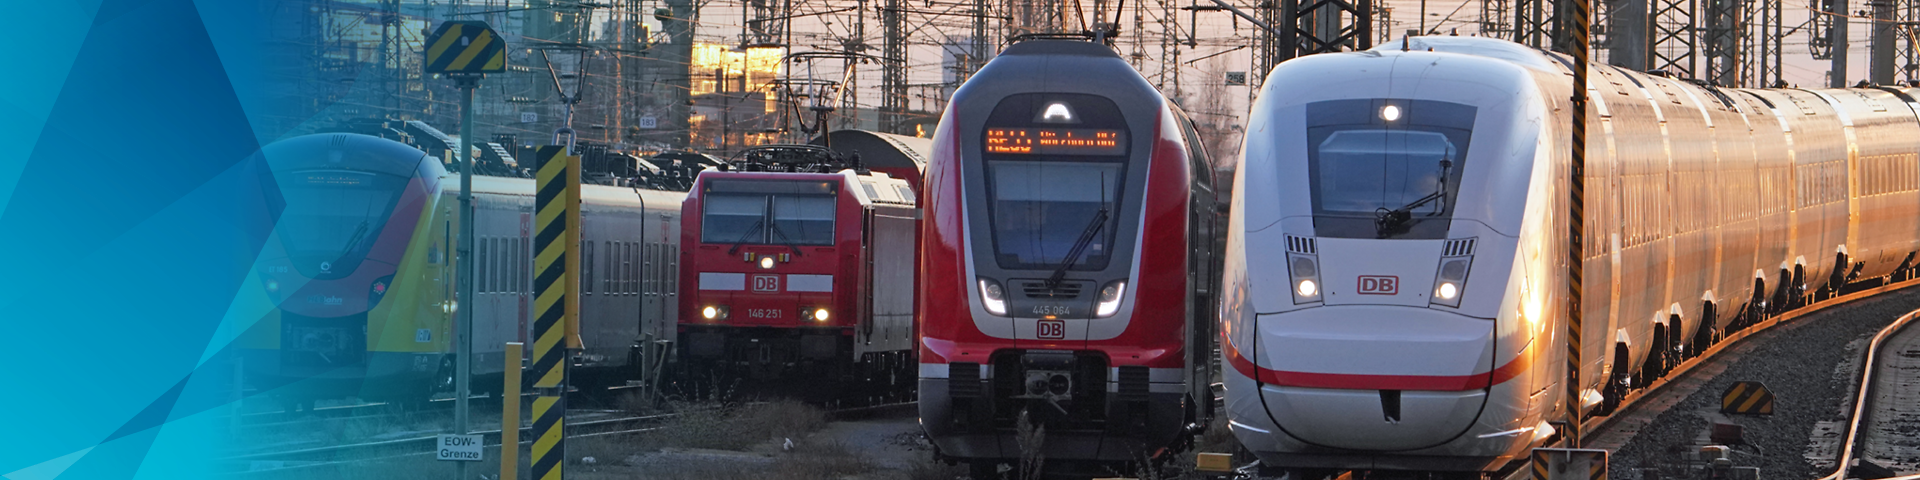 Verschiedene Züge nebeneinander bei der Einfahrt in einen Bahnhof